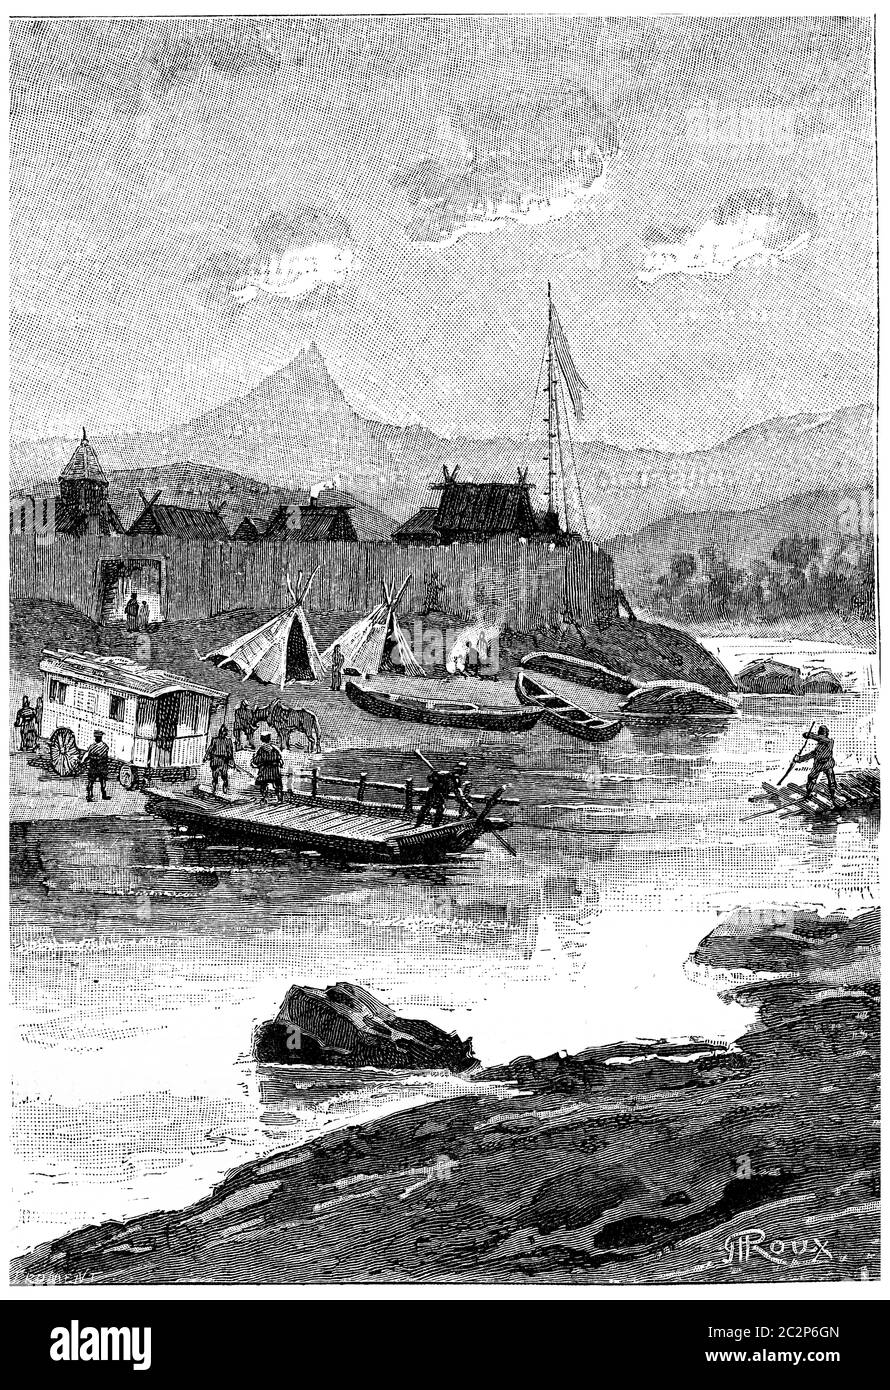 Un ferry transportait la Belle Caravan sur la rive droite, illustration gravée d'époque. Jules Verne Cesar Cascabel, 1890. Banque D'Images